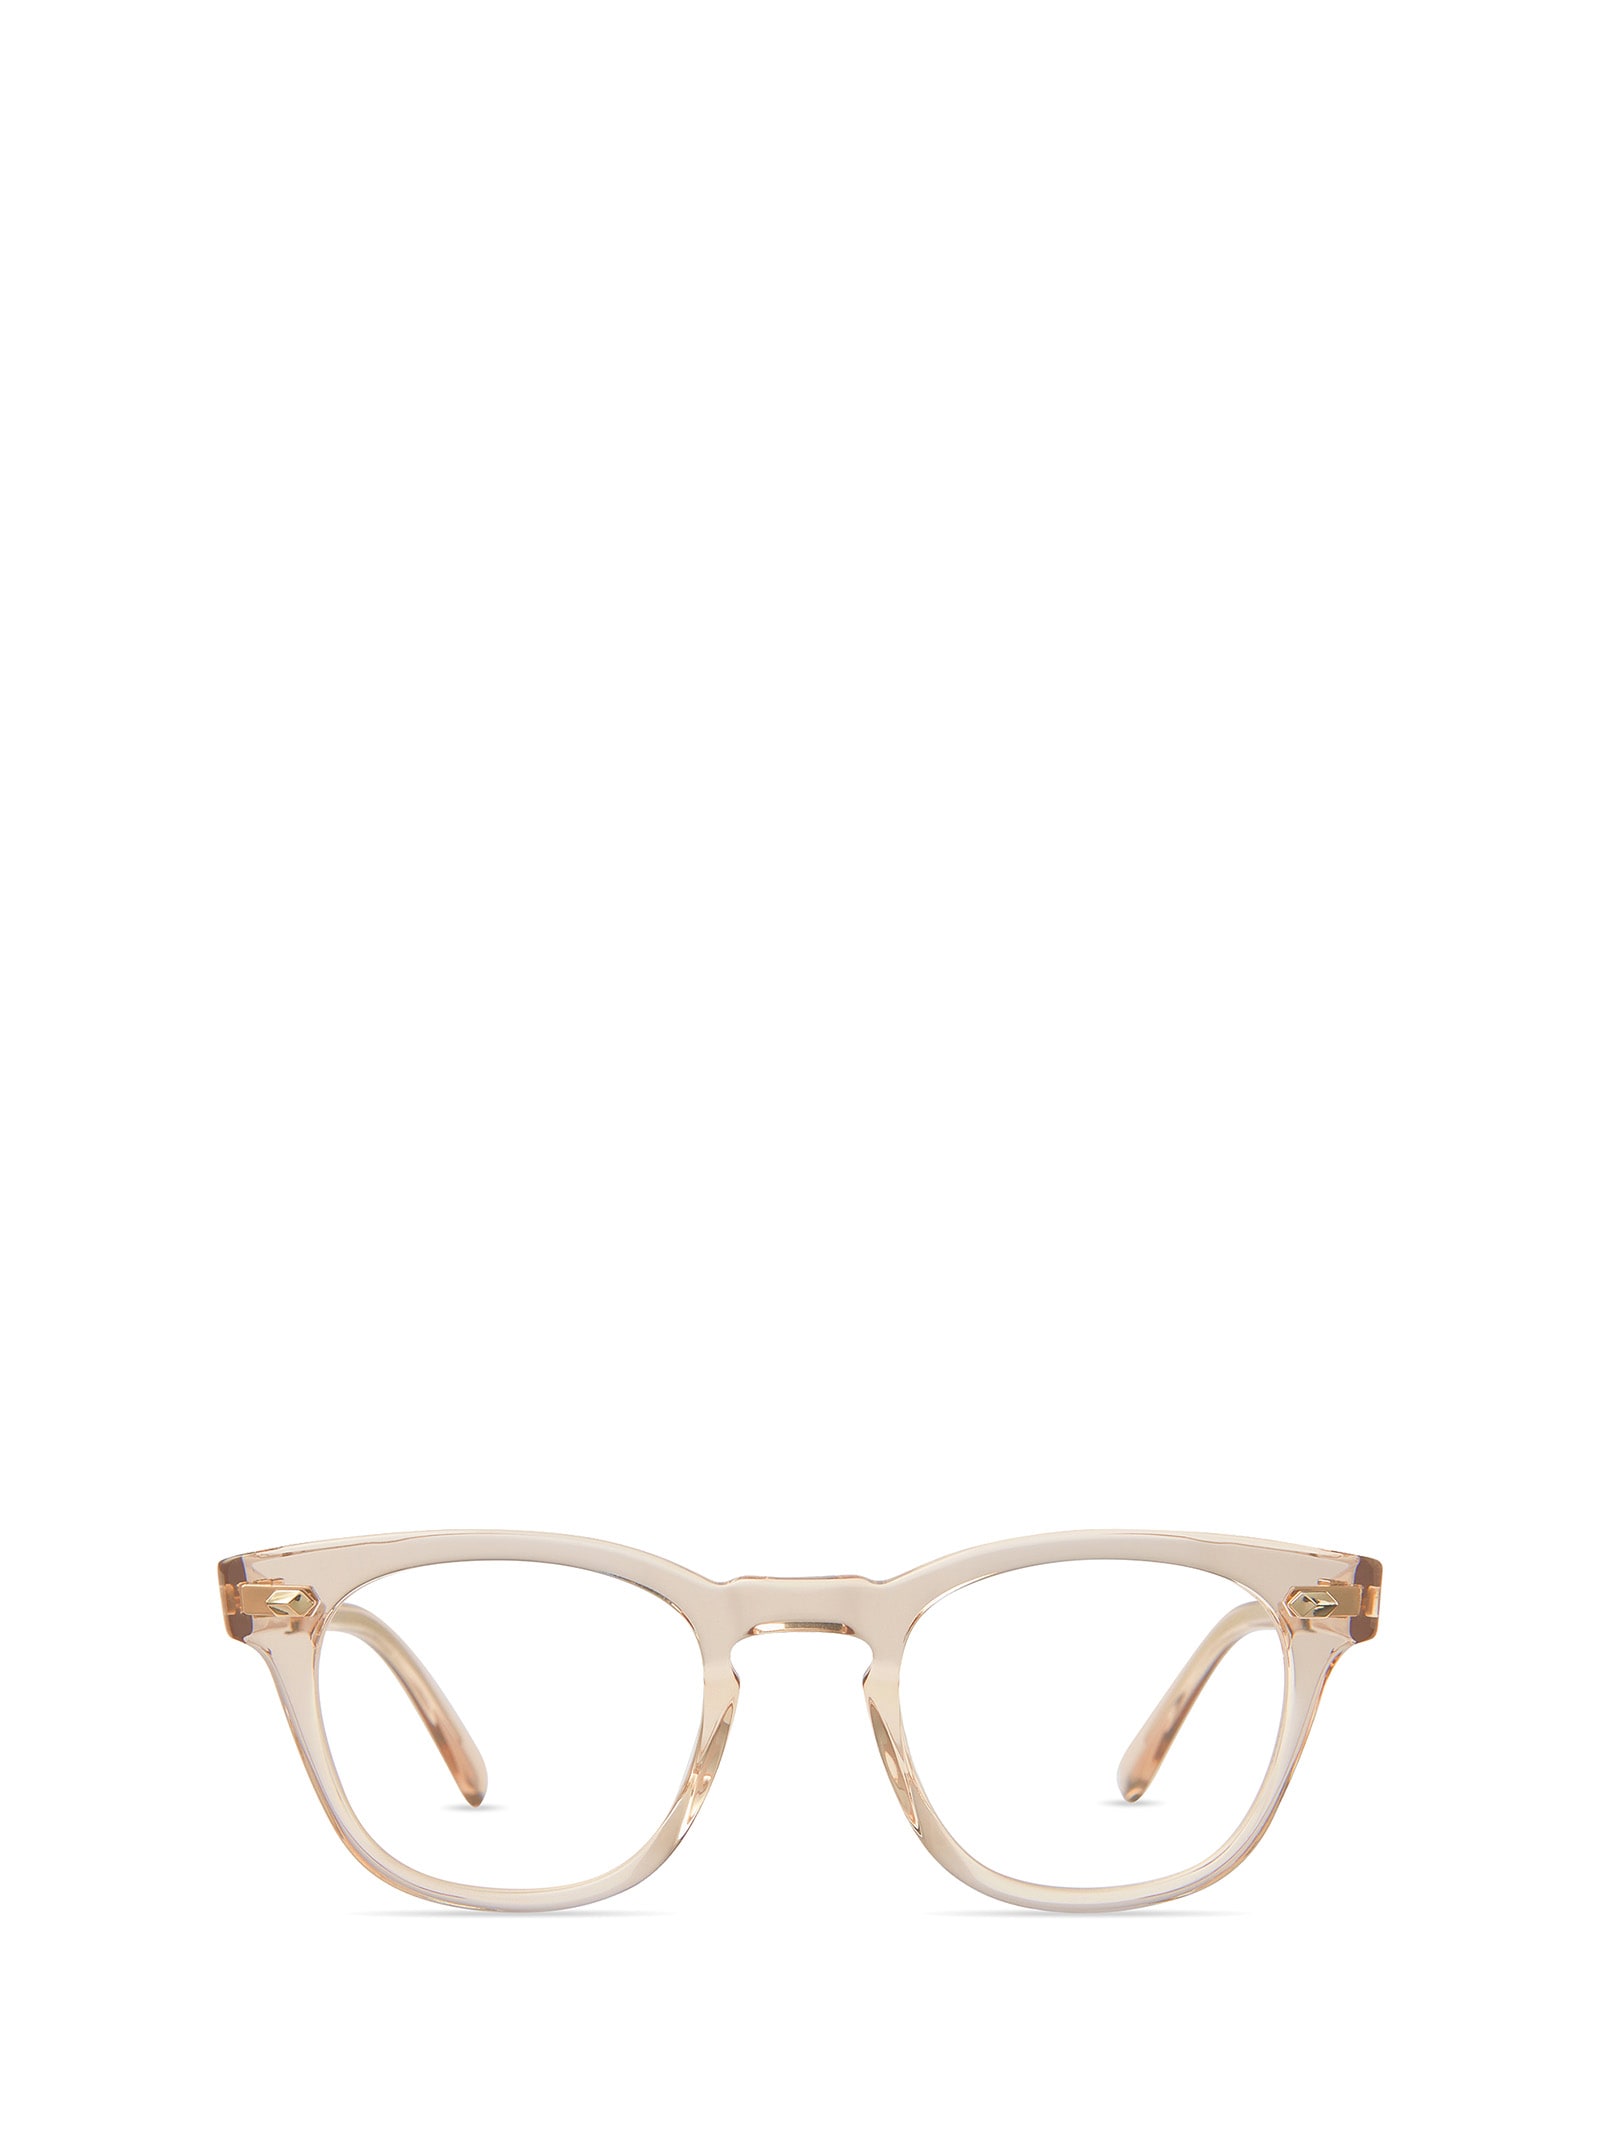 Mr Leight Hanalei C Dune-white Gold Glasses